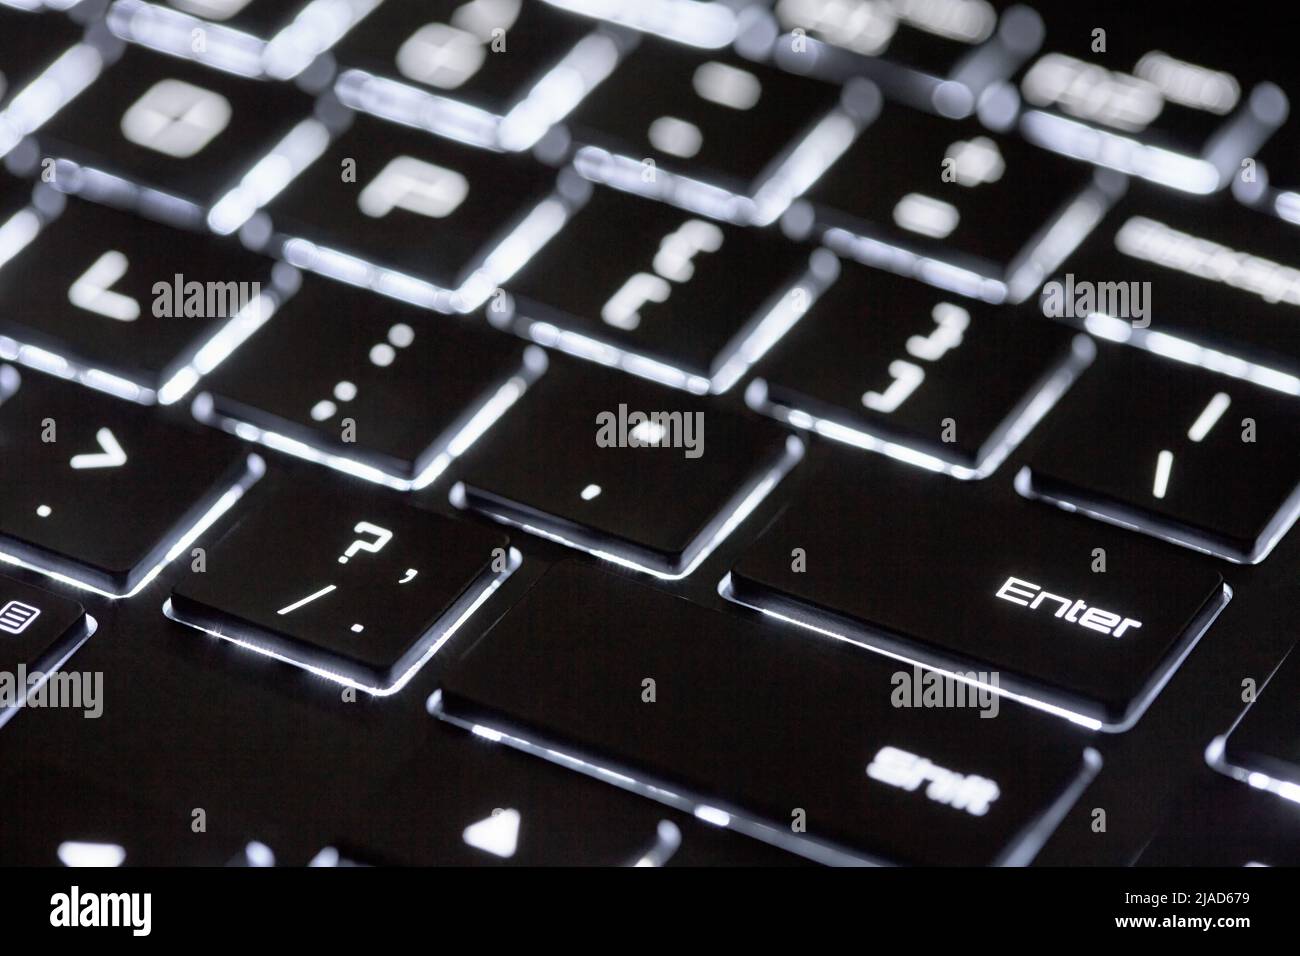 Clavier d'ordinateur rétroéclairé, arrière-plan technologique noir et blanc, gros plan du clavier éclairé. Banque D'Images